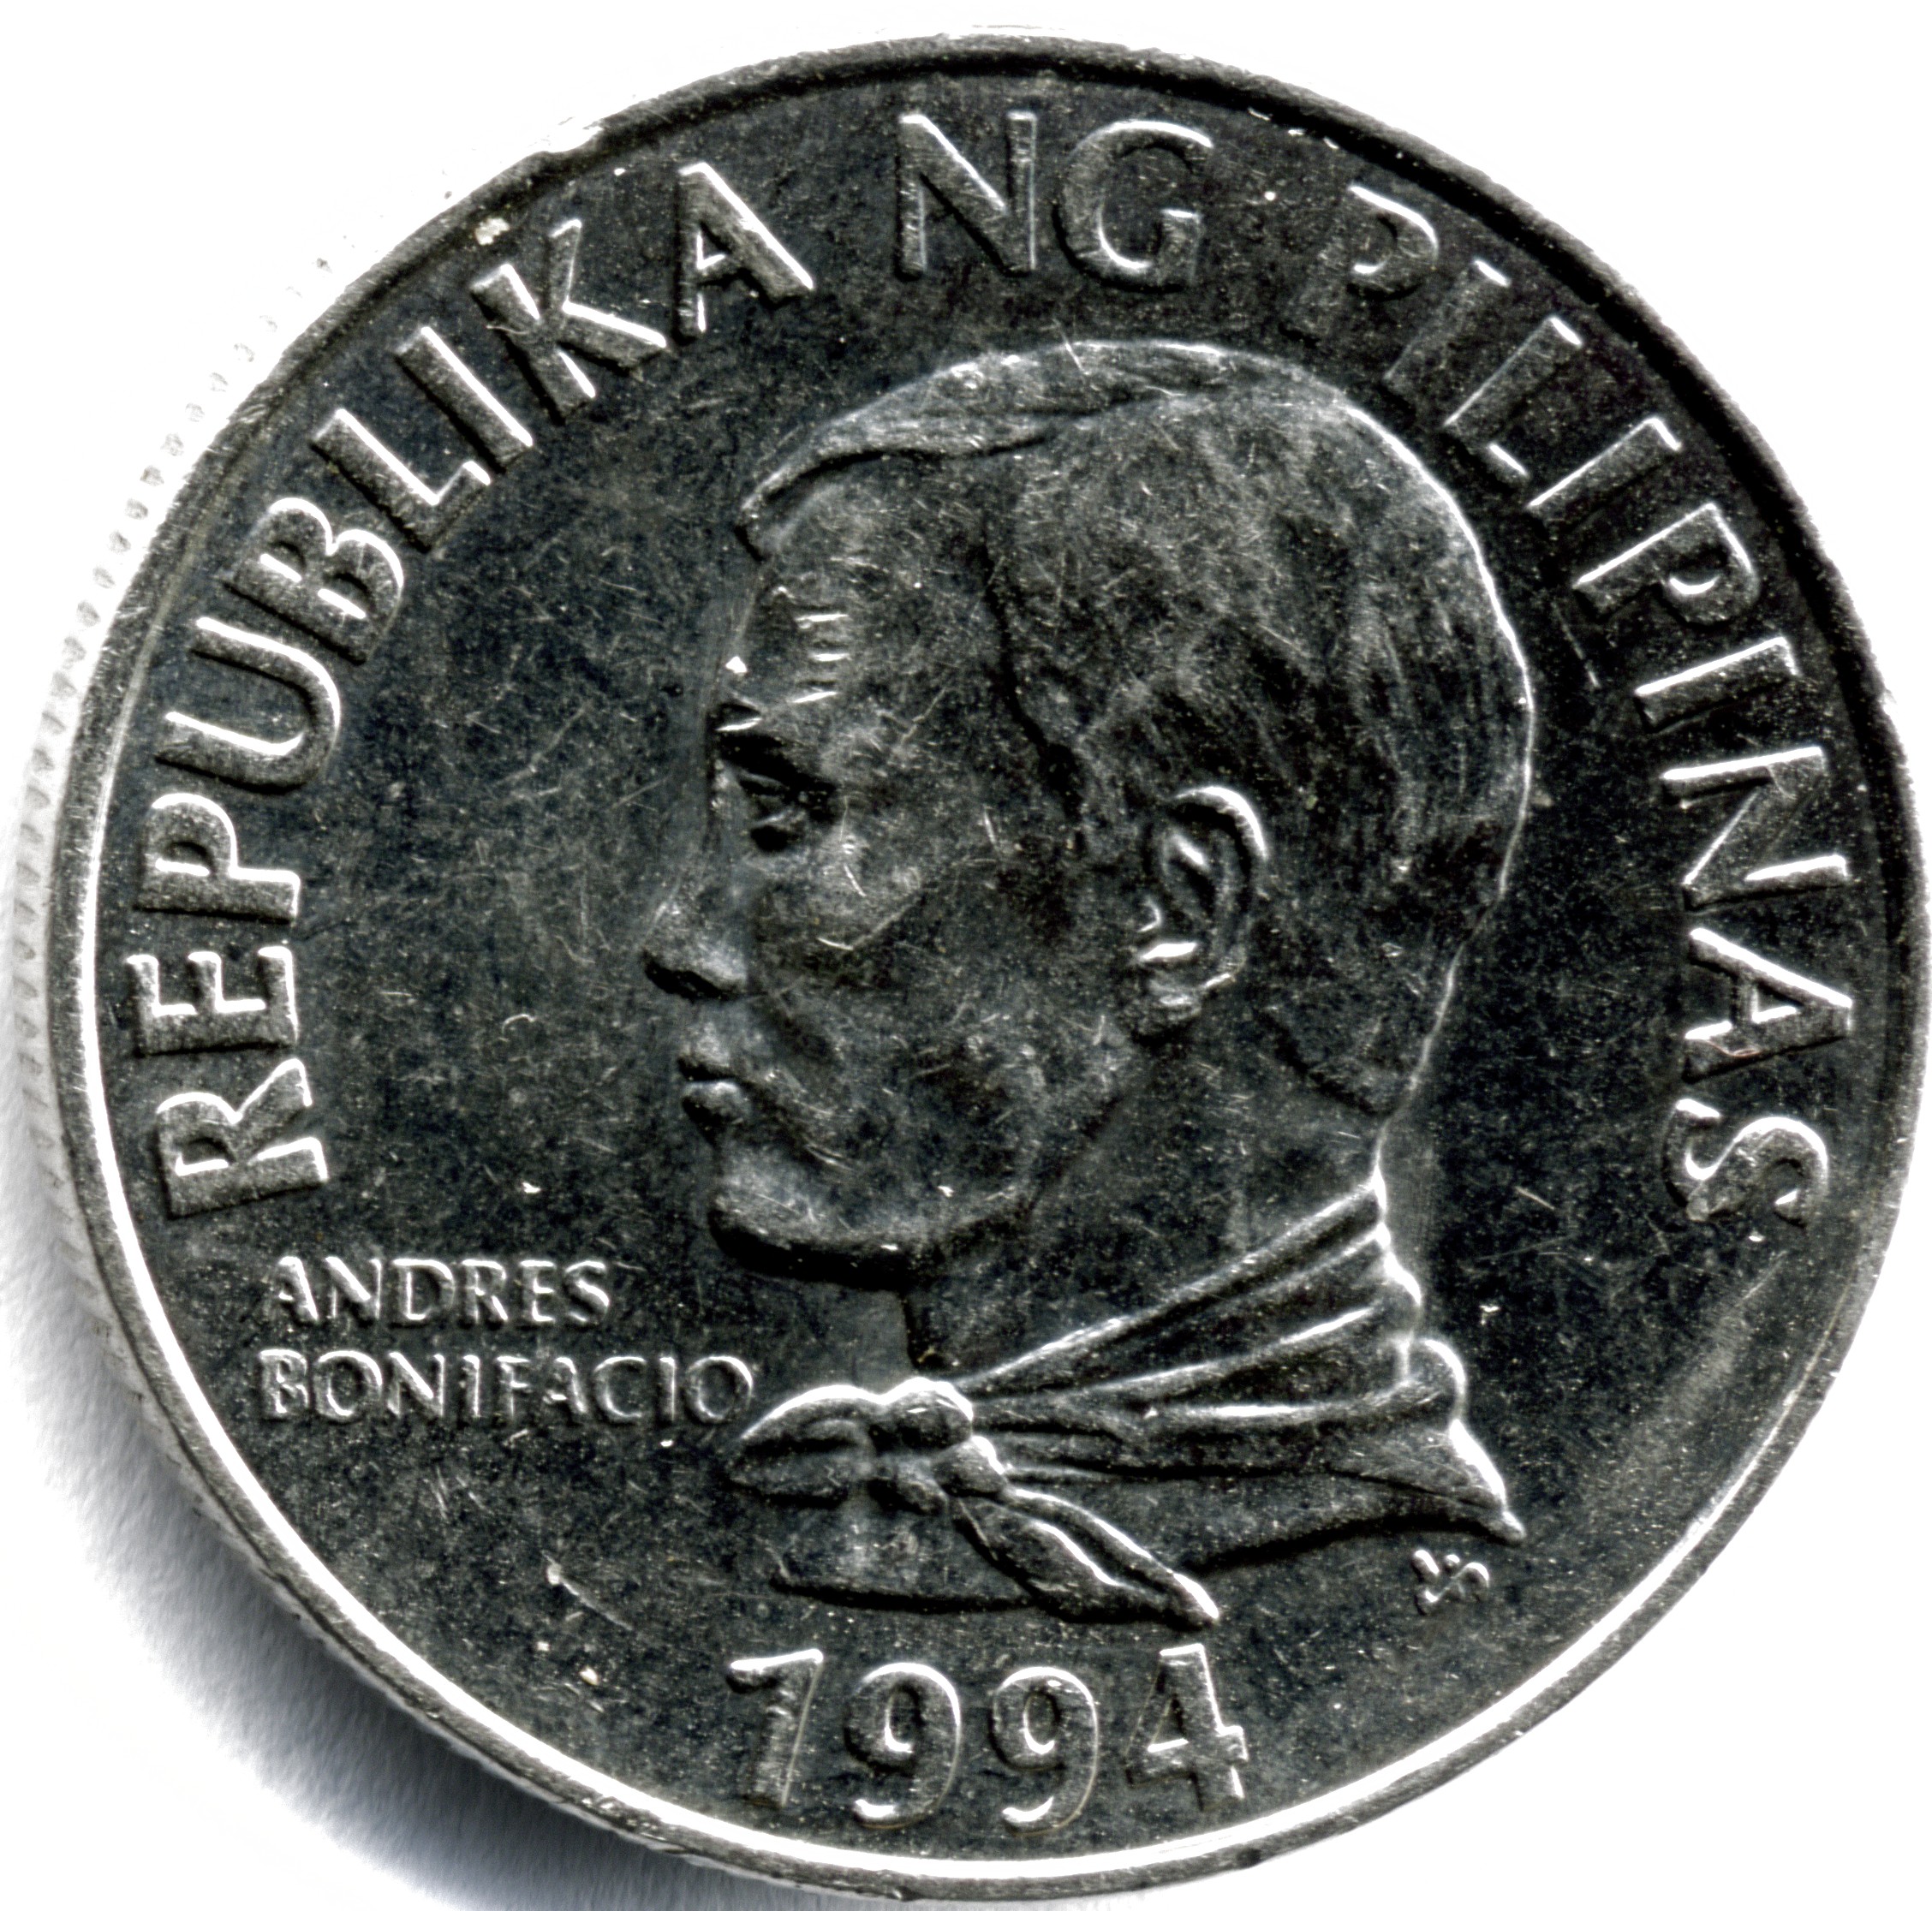 1 Piso - Philippines – Numista